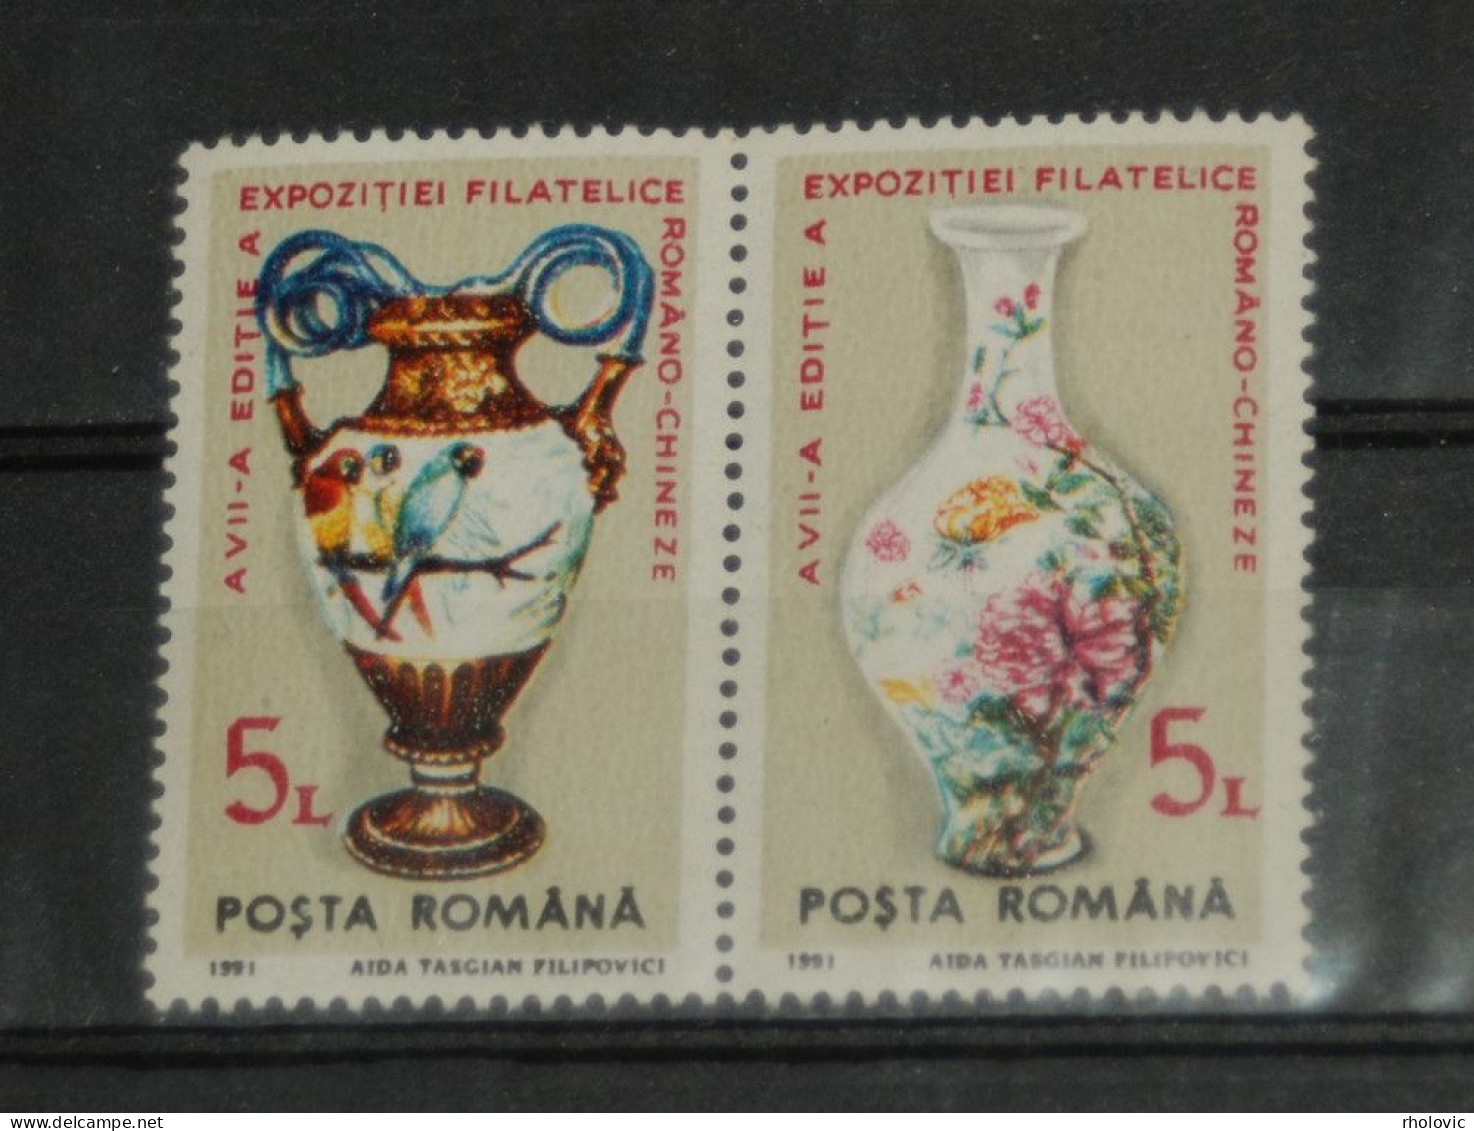 ROMANIA 1991, Art, Porcelain, Vase, Stamp Exhibition, Mi #4672-3, MNH** - Porselein